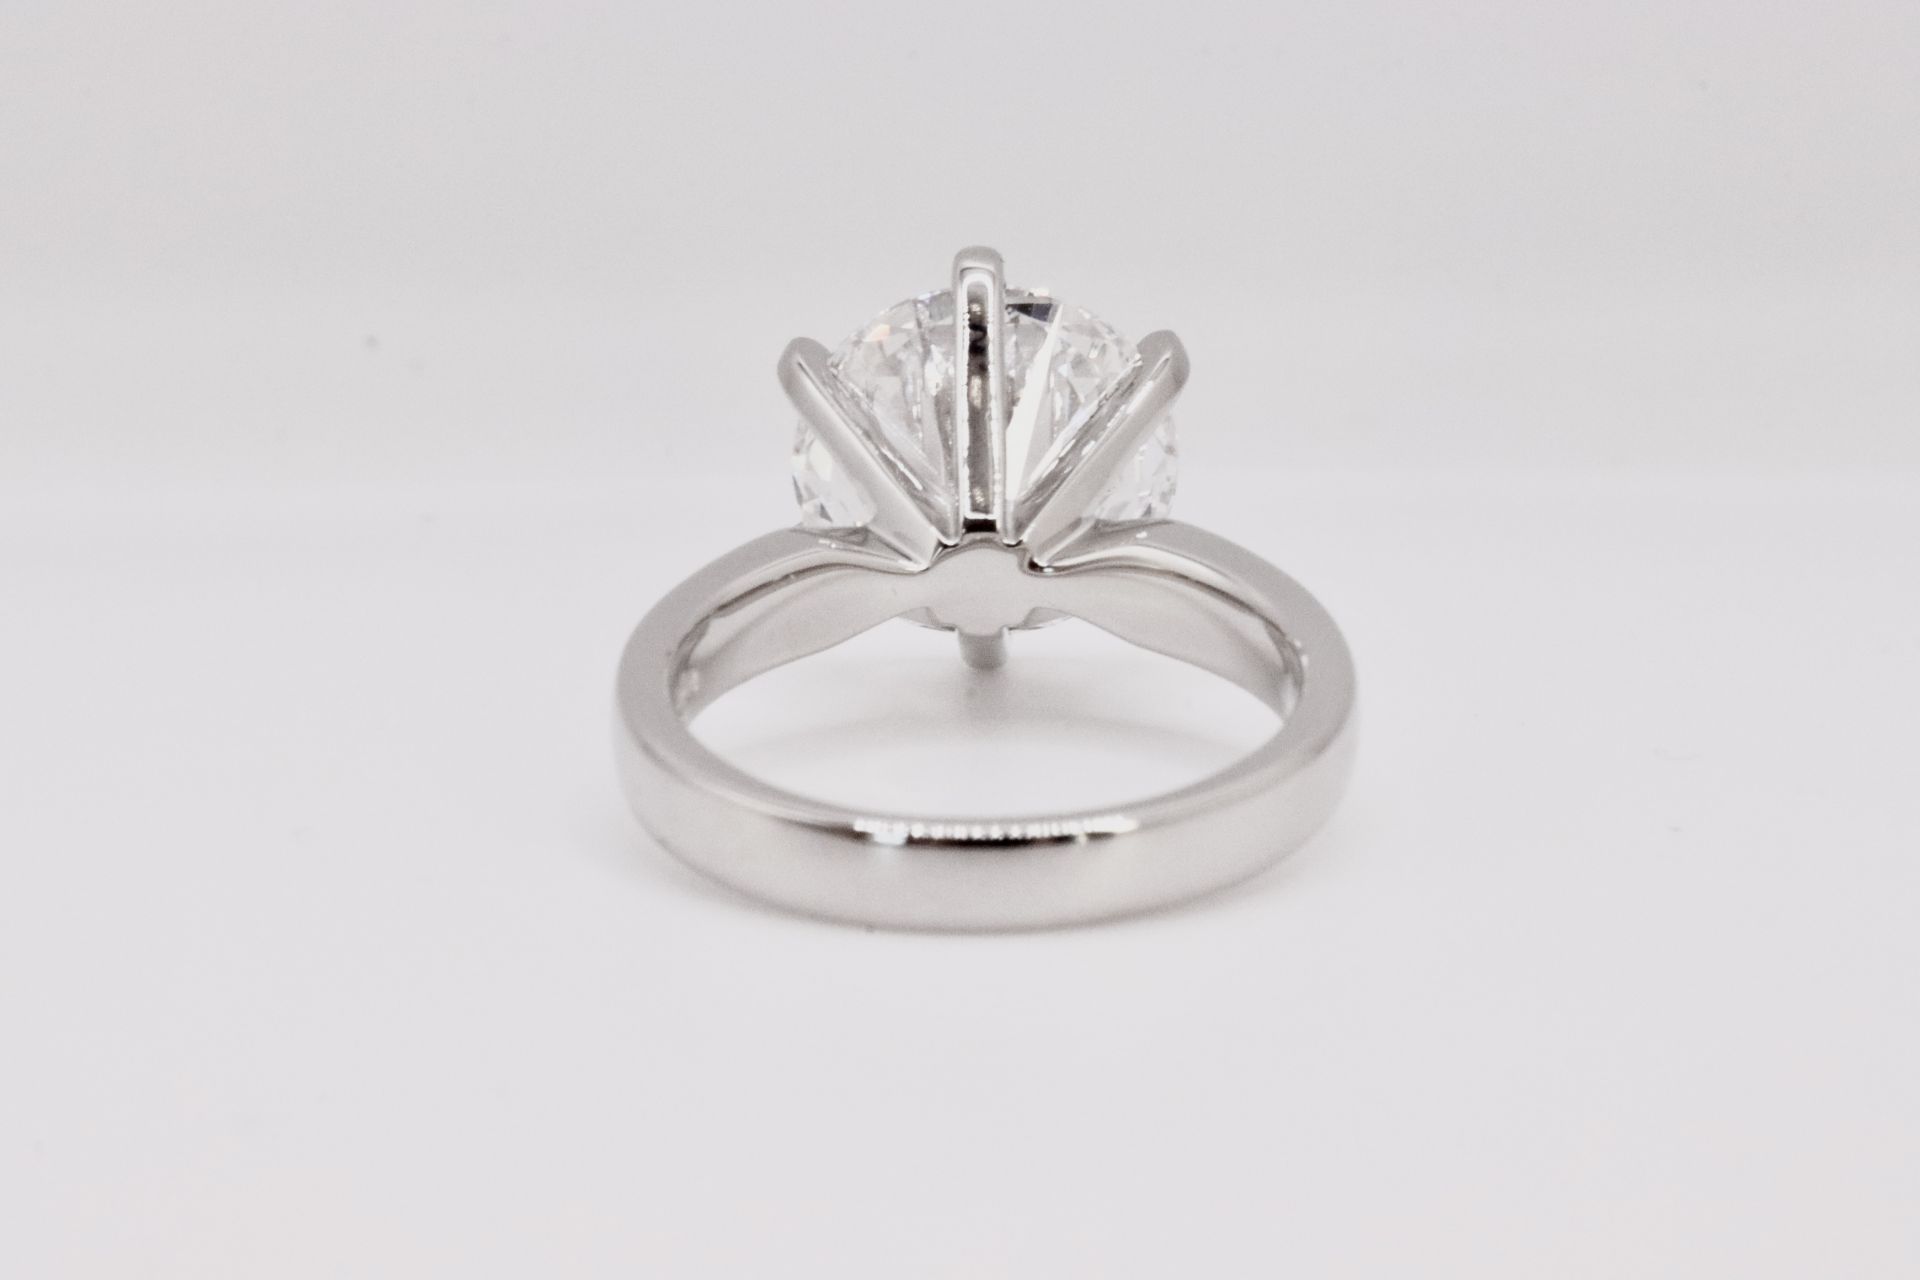 Round Brilliant Cut 5.00 Carat Diamond Ring Set in Platinum - F Colour VVS Clarity - IGI - Image 4 of 6